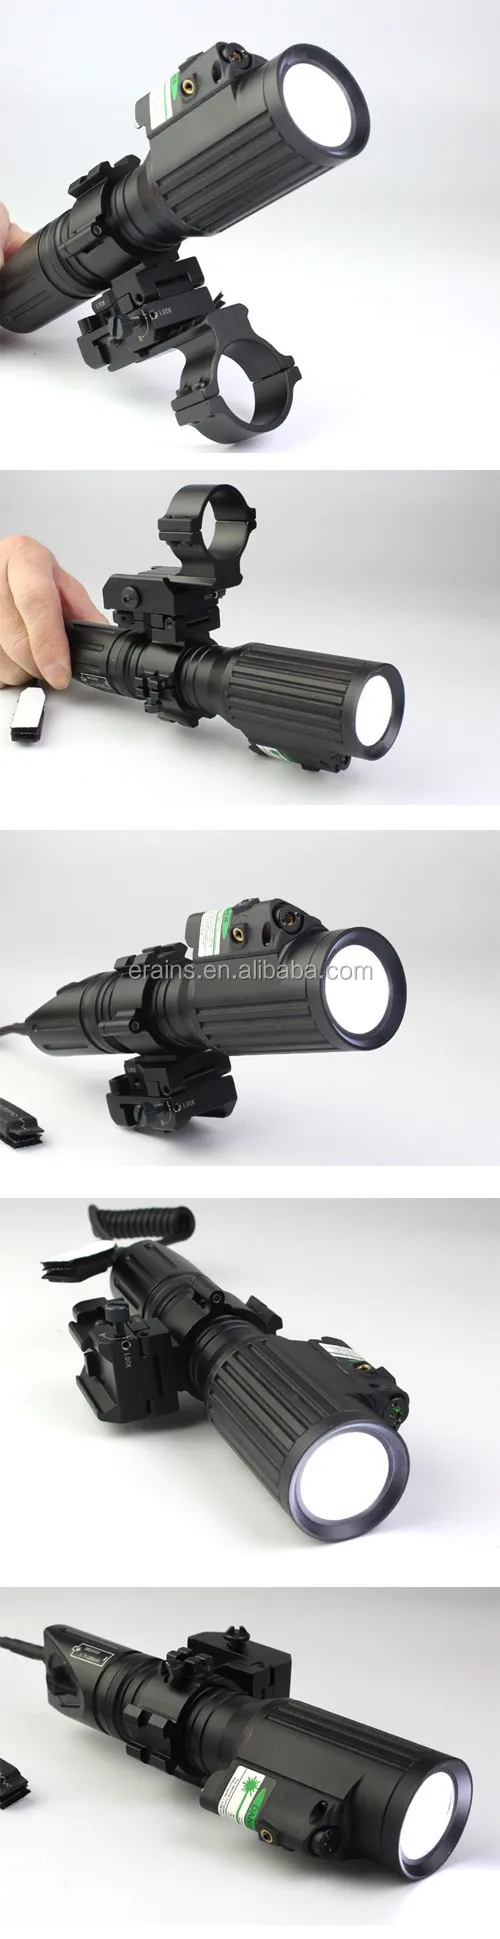 ES-LS-1KLMG 1000 lumens T6 LED light with green laser combo with windage elevation adjustable mount installed.jpg